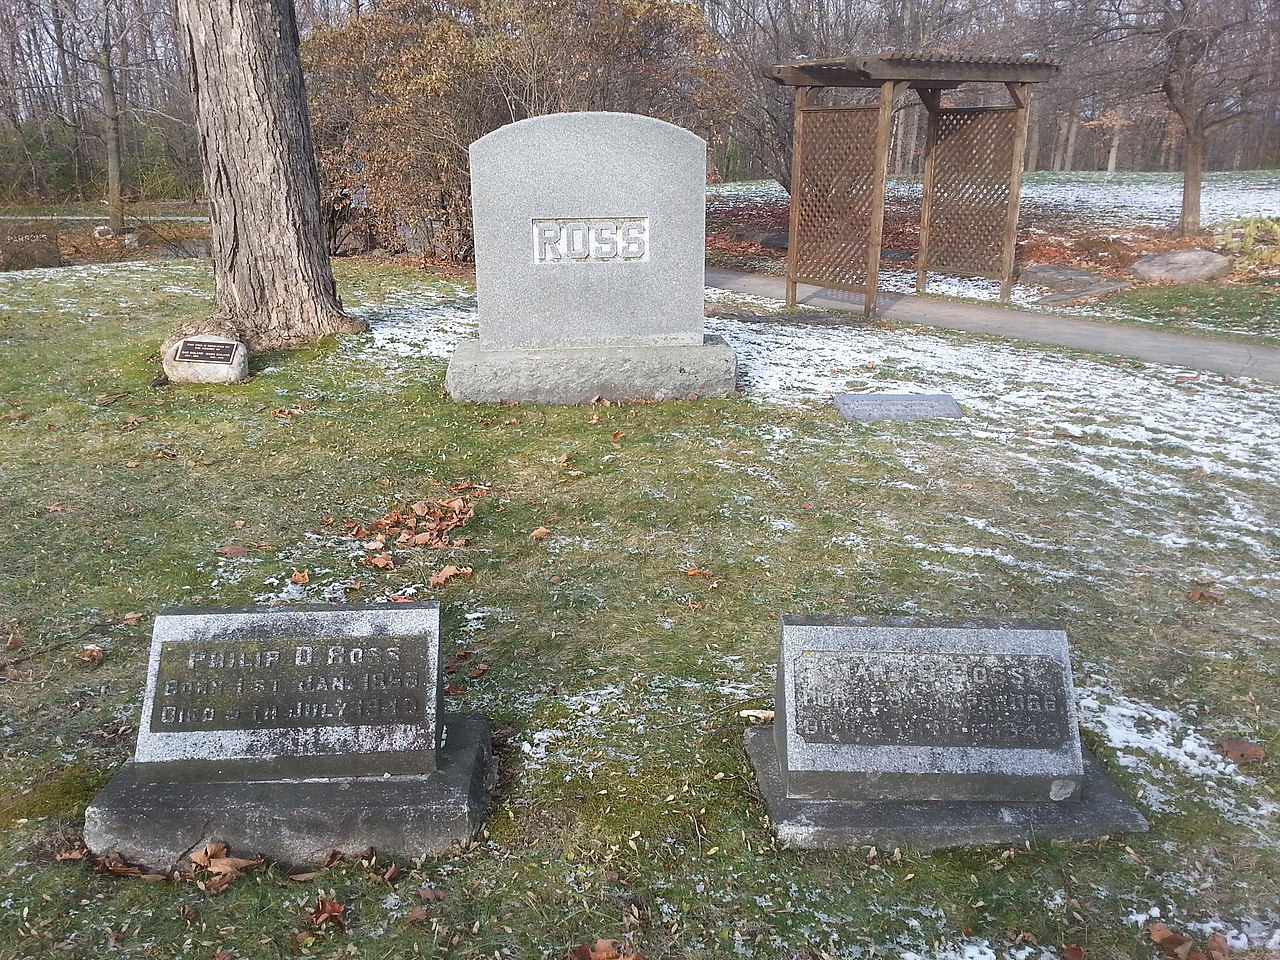 Ross' grave